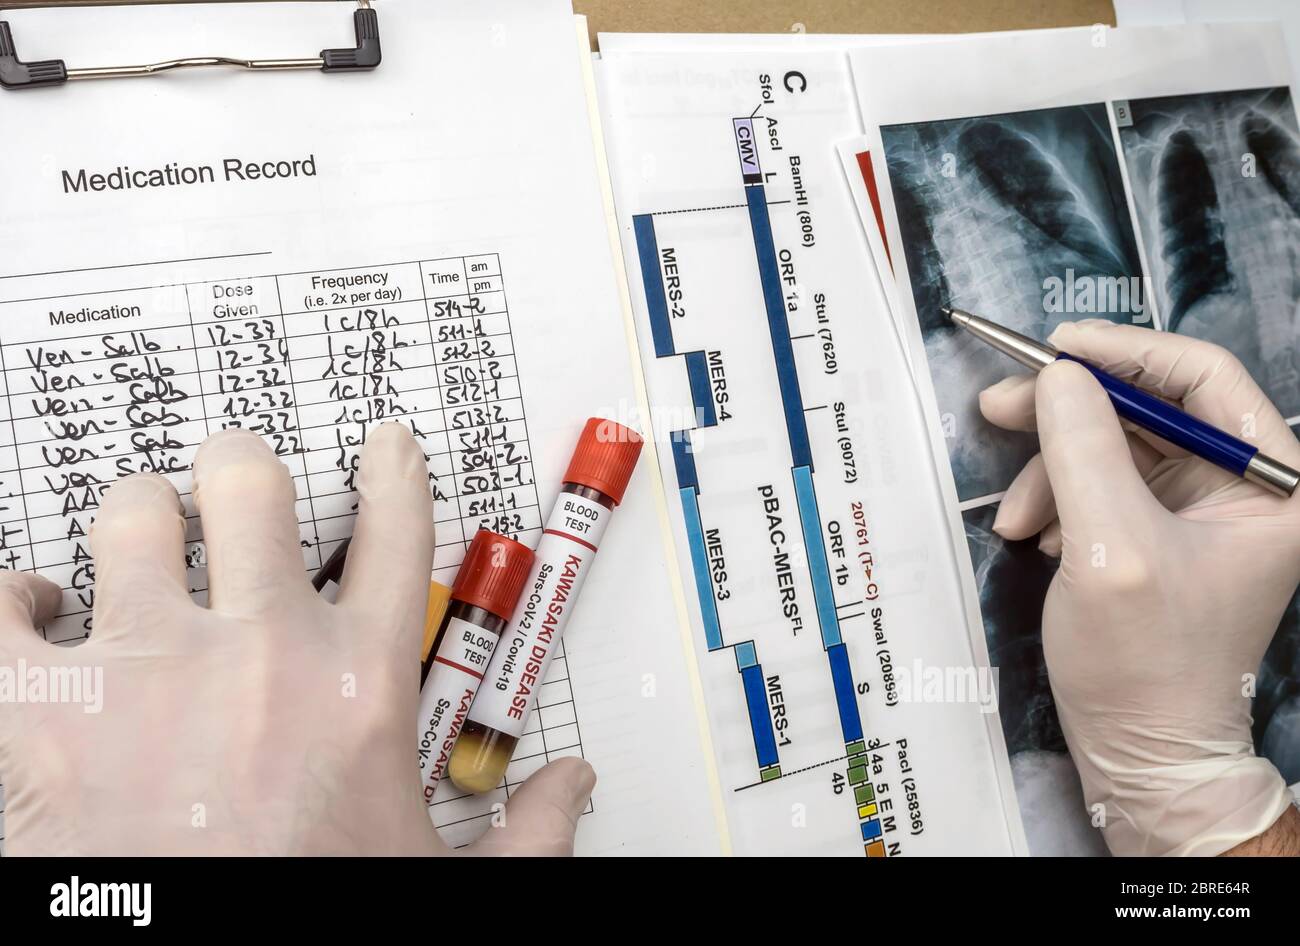 Le médecin détecte le diagnostic dans le poumon d'un enfant atteint par la maladie de Kawasaki avec plusieurs échantillons de sang dans un hôpital, image conceptuelle Banque D'Images